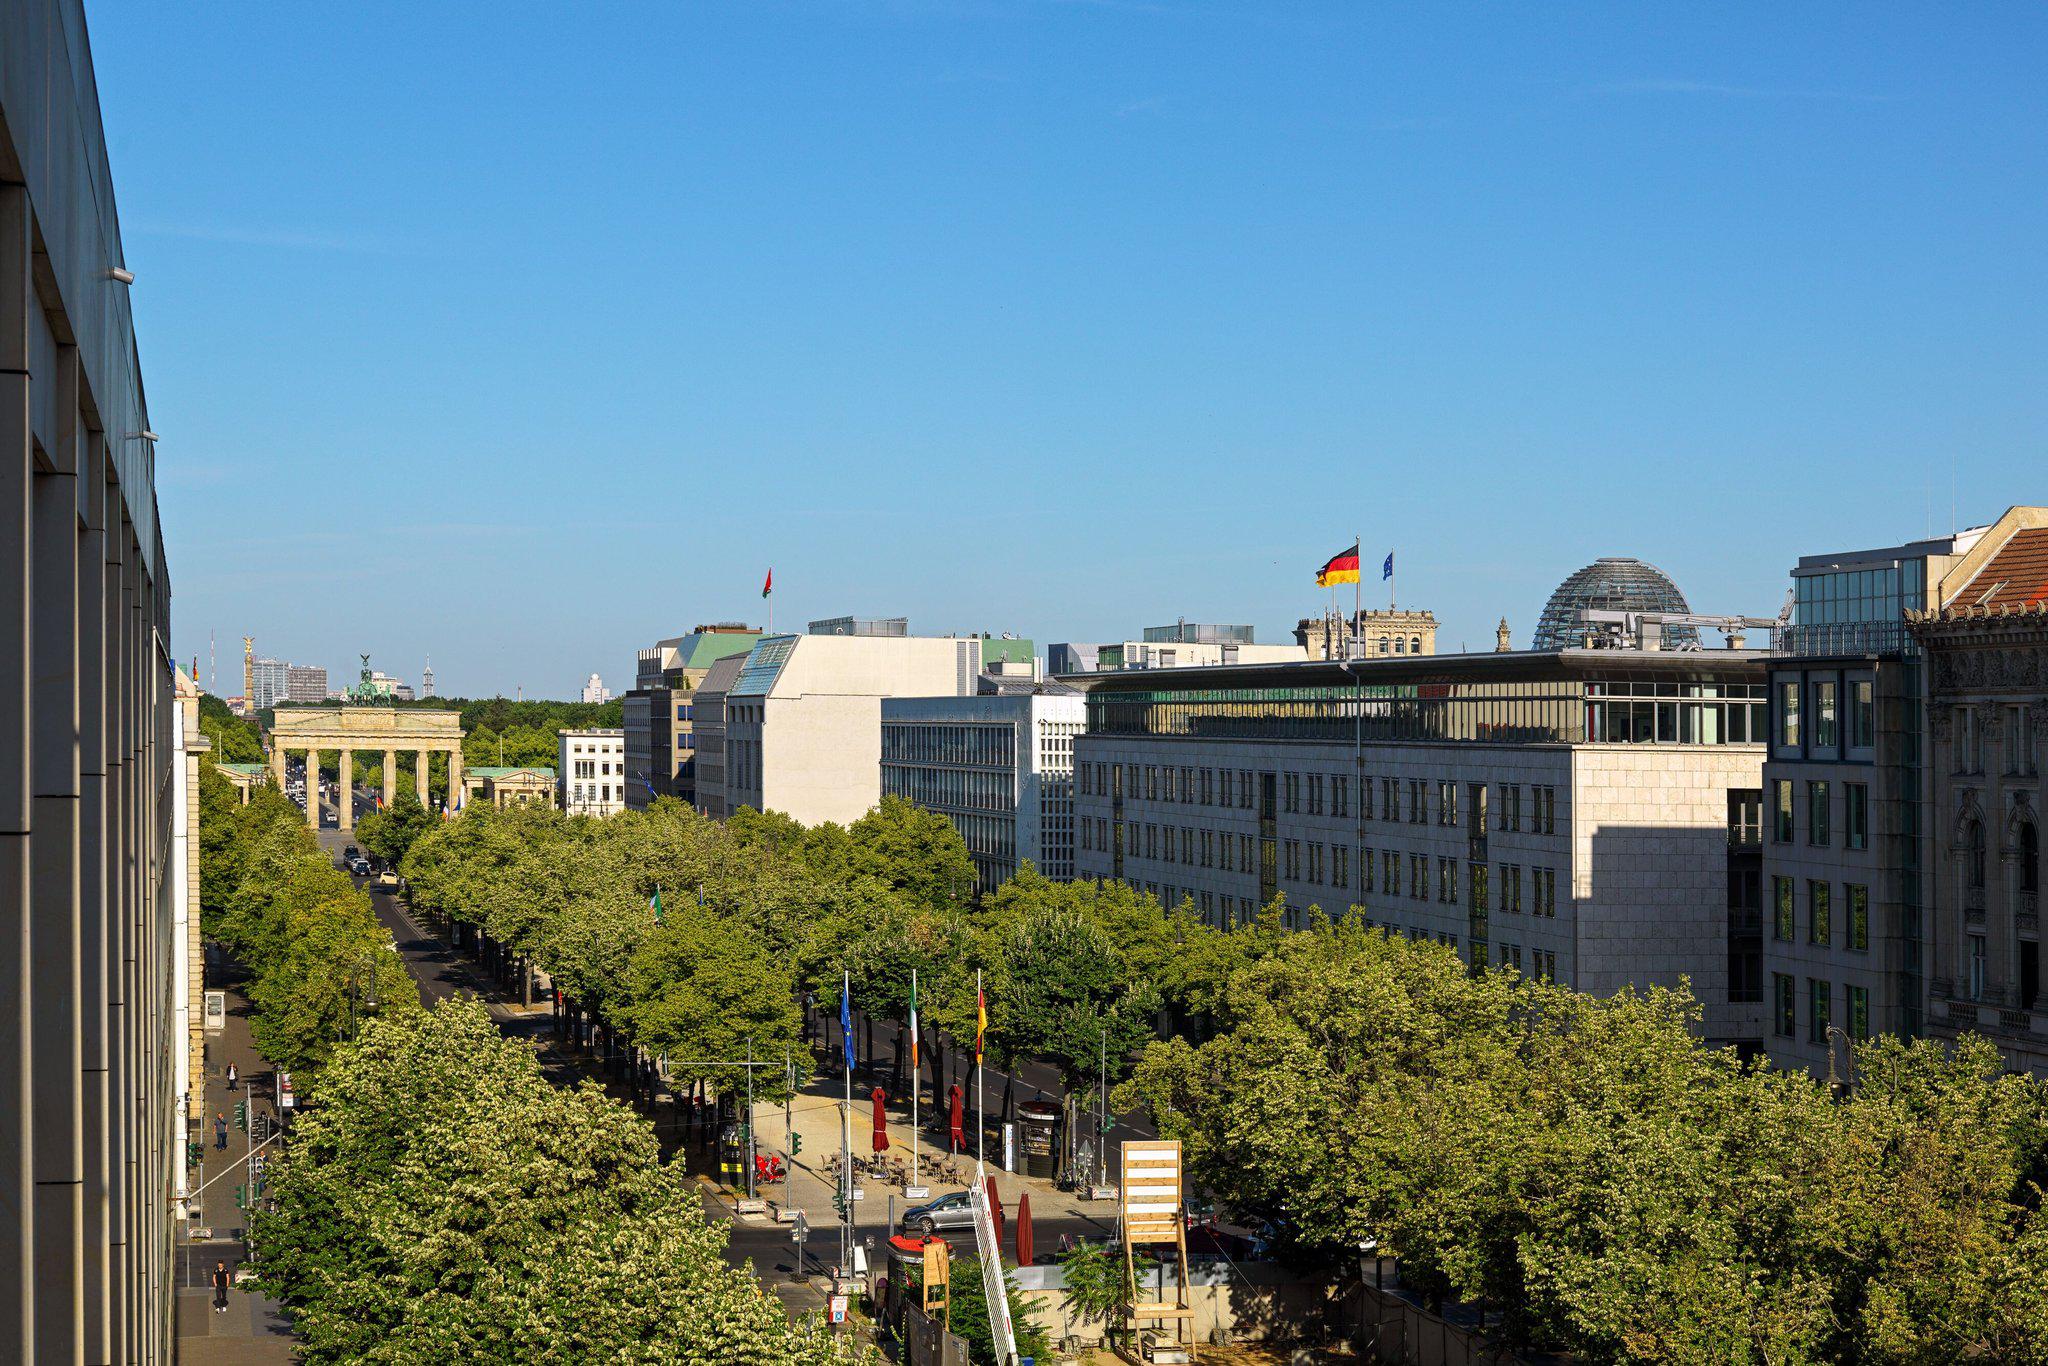 The Westin Grand, Berlin, Friedrichstrasse 158-164 in Berlin